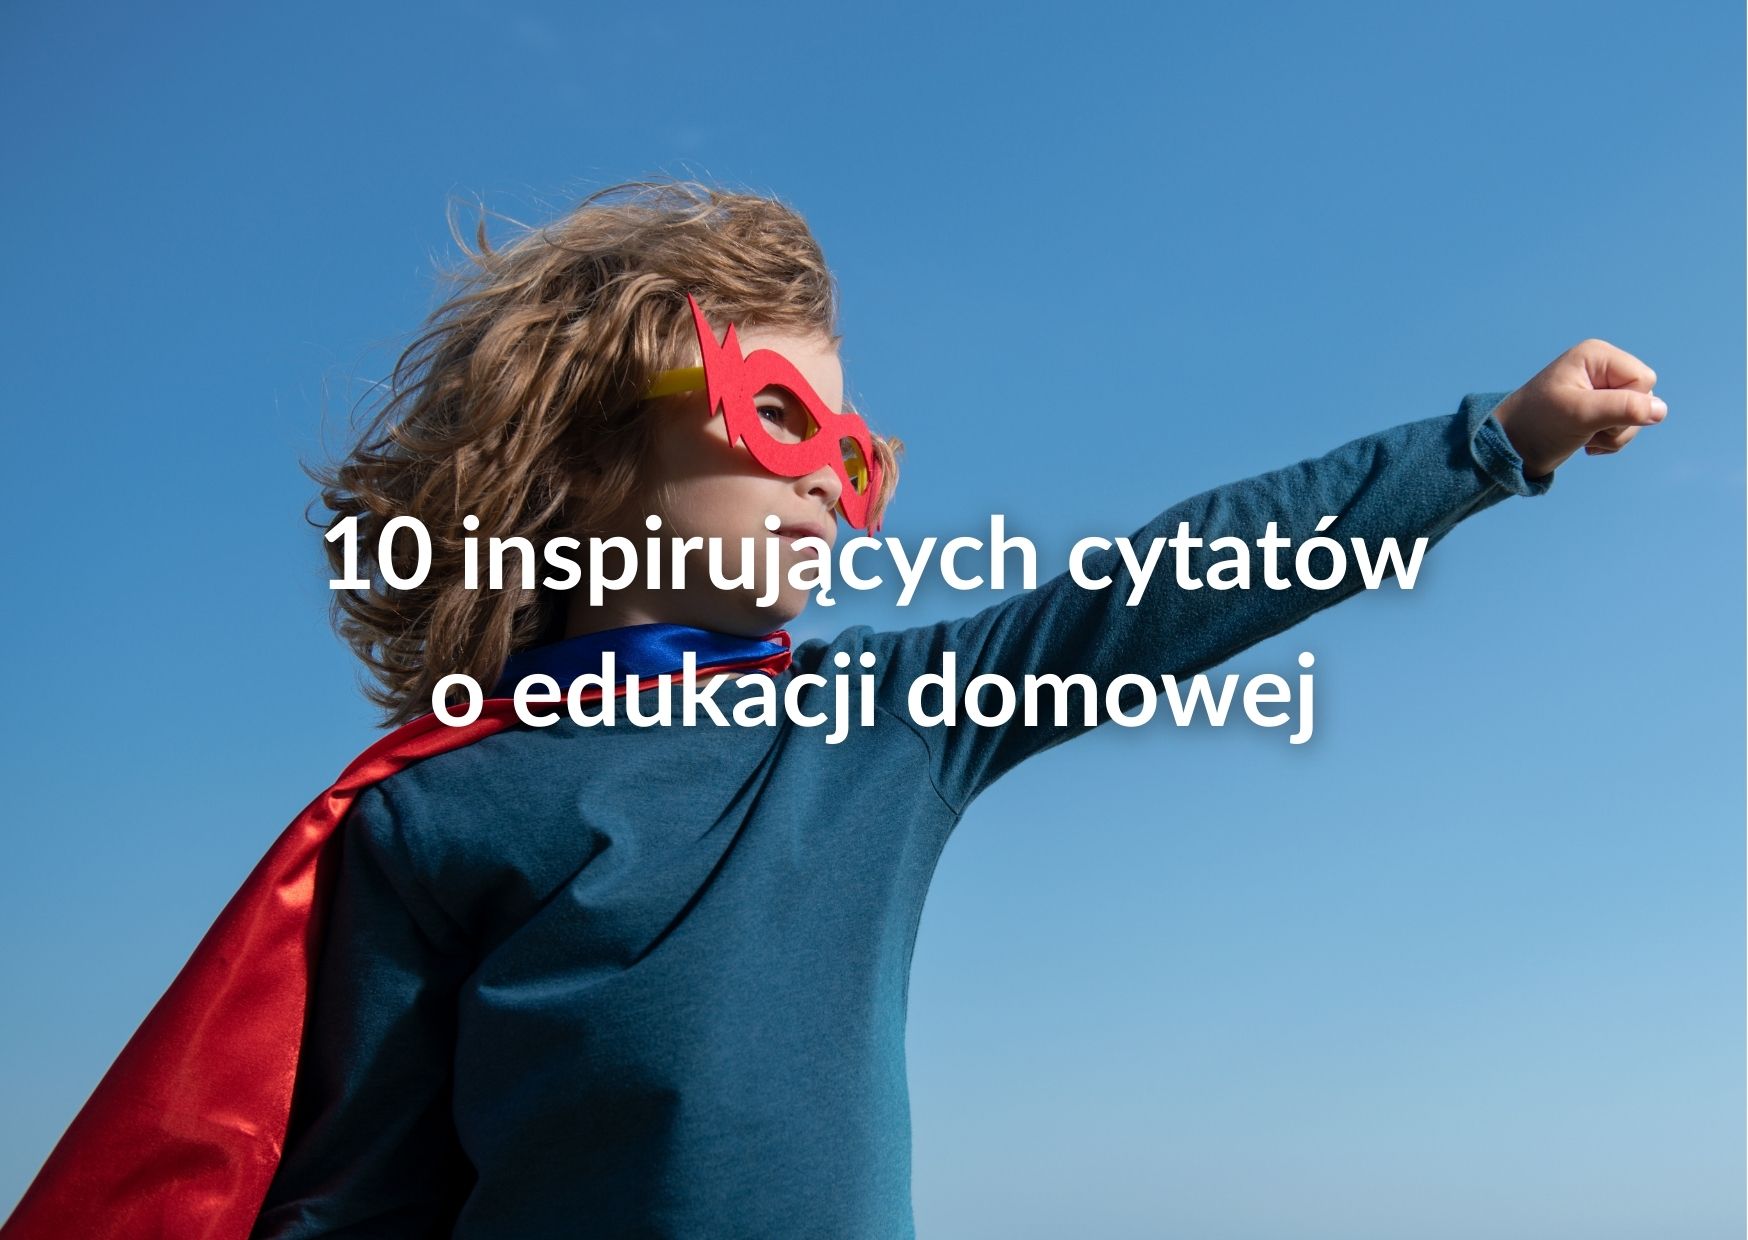 10 inspirujących cytatów o edukacji domowej – cz.1